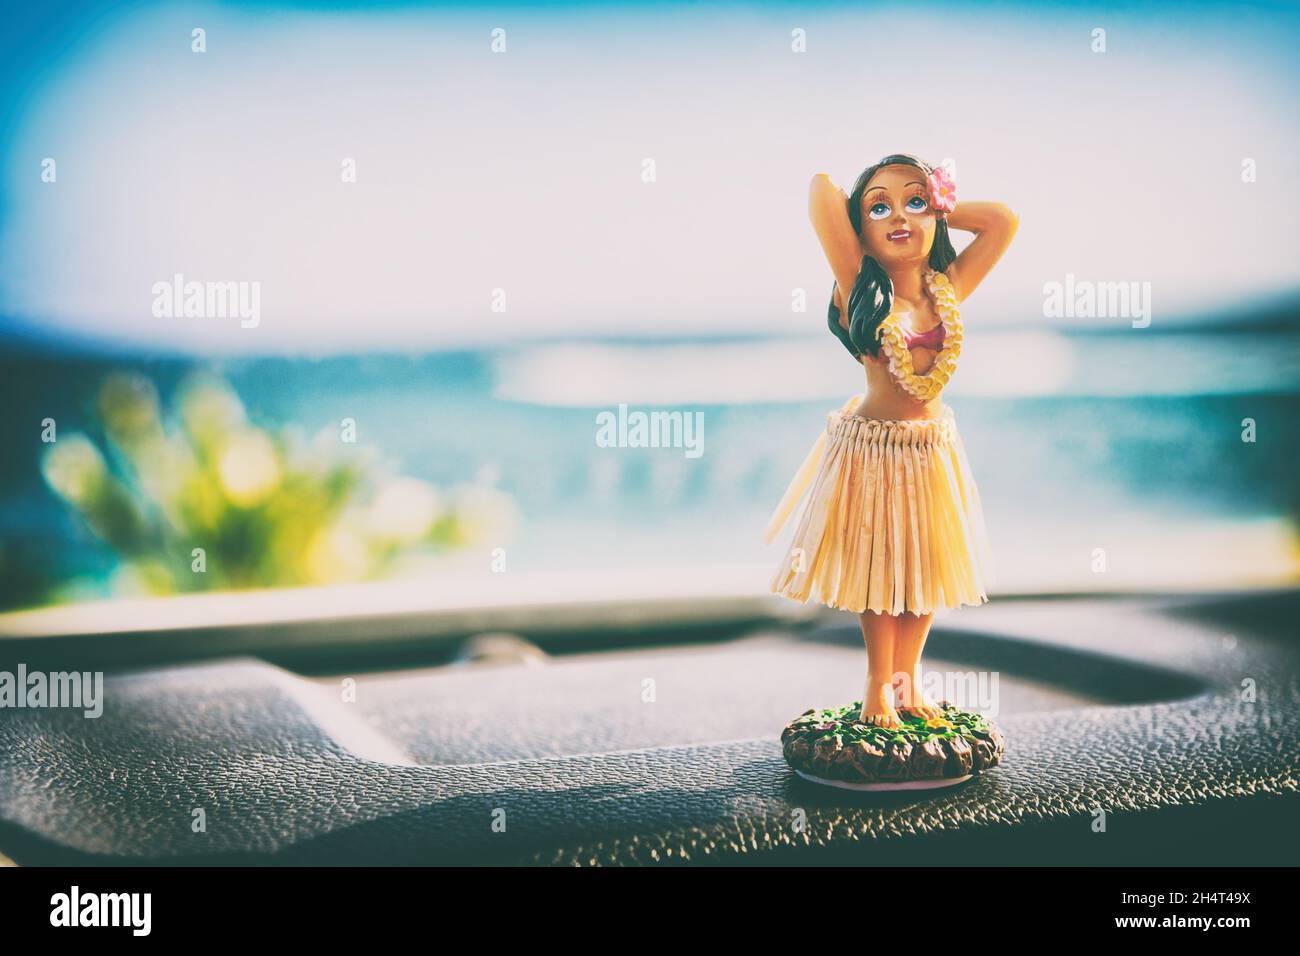 Hawaii Hula Tänzerin Mädchen Puppe auf dem Armaturenbrett von Auto Road  trip - Sommerurlaub Reise tanzende Frau am Ozean Strand. Konzept der  Tourismus- und Reisefreiheit Stockfotografie - Alamy